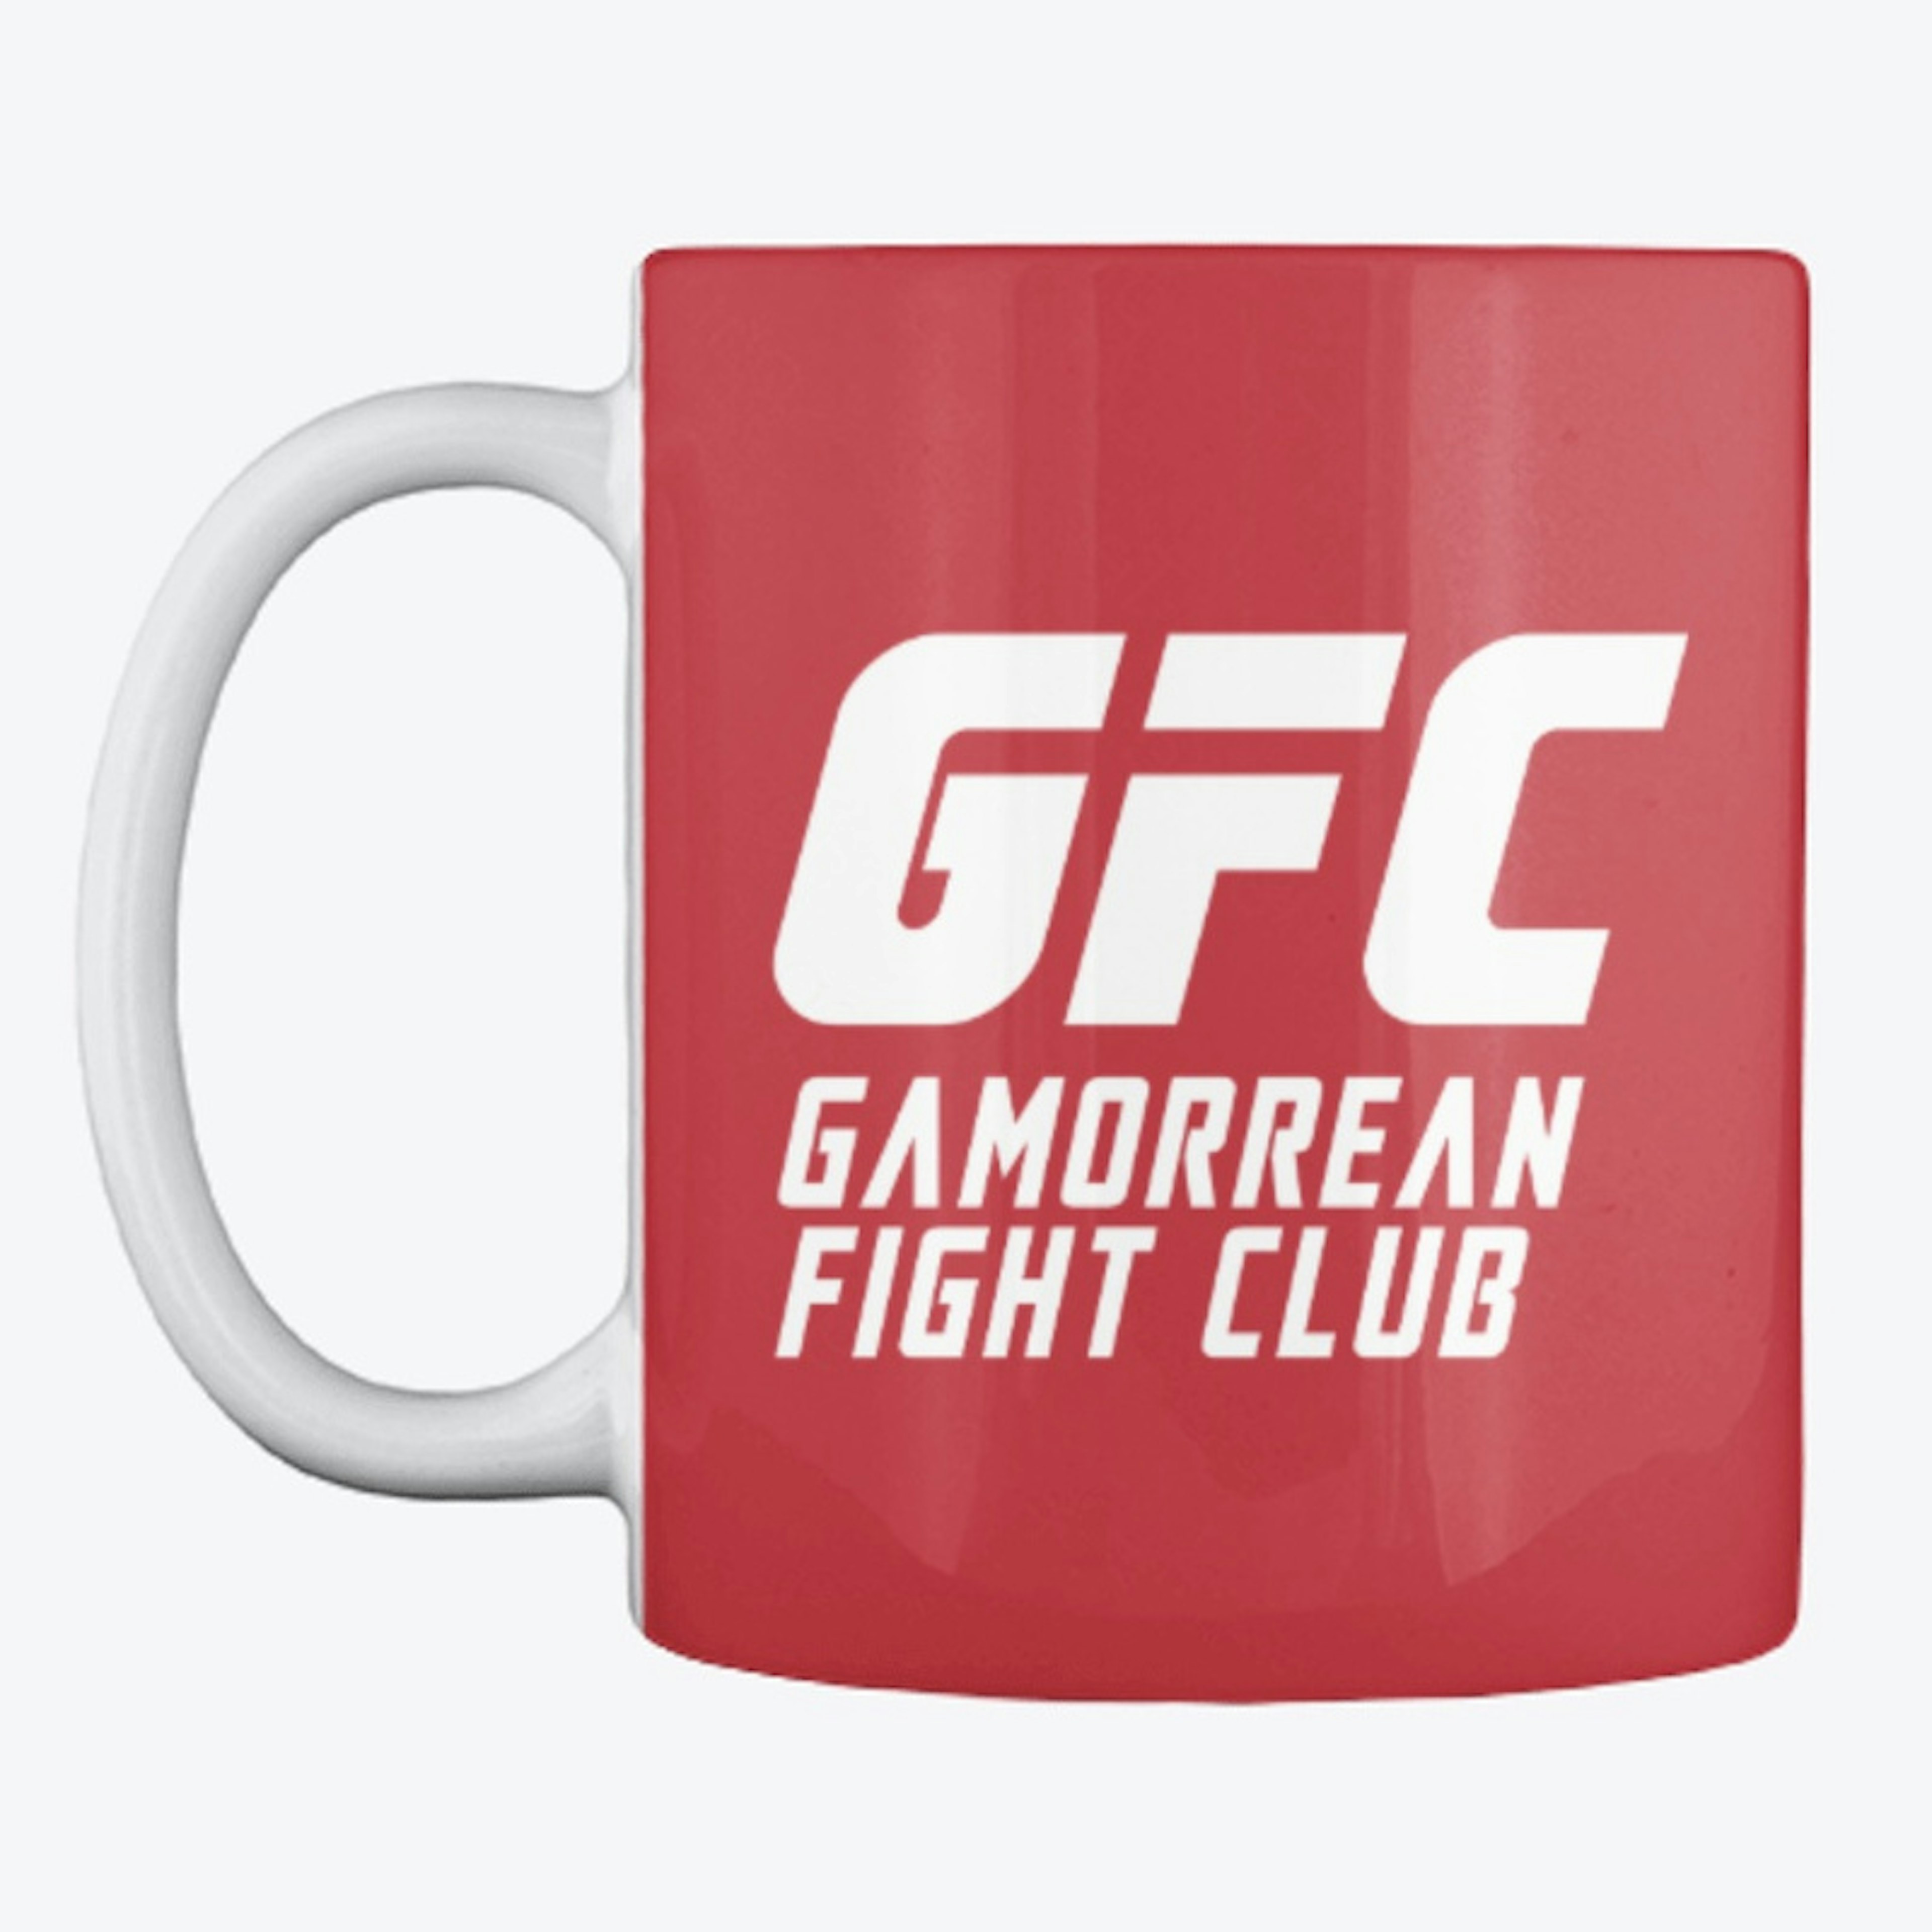 Gamorrean Fight Club